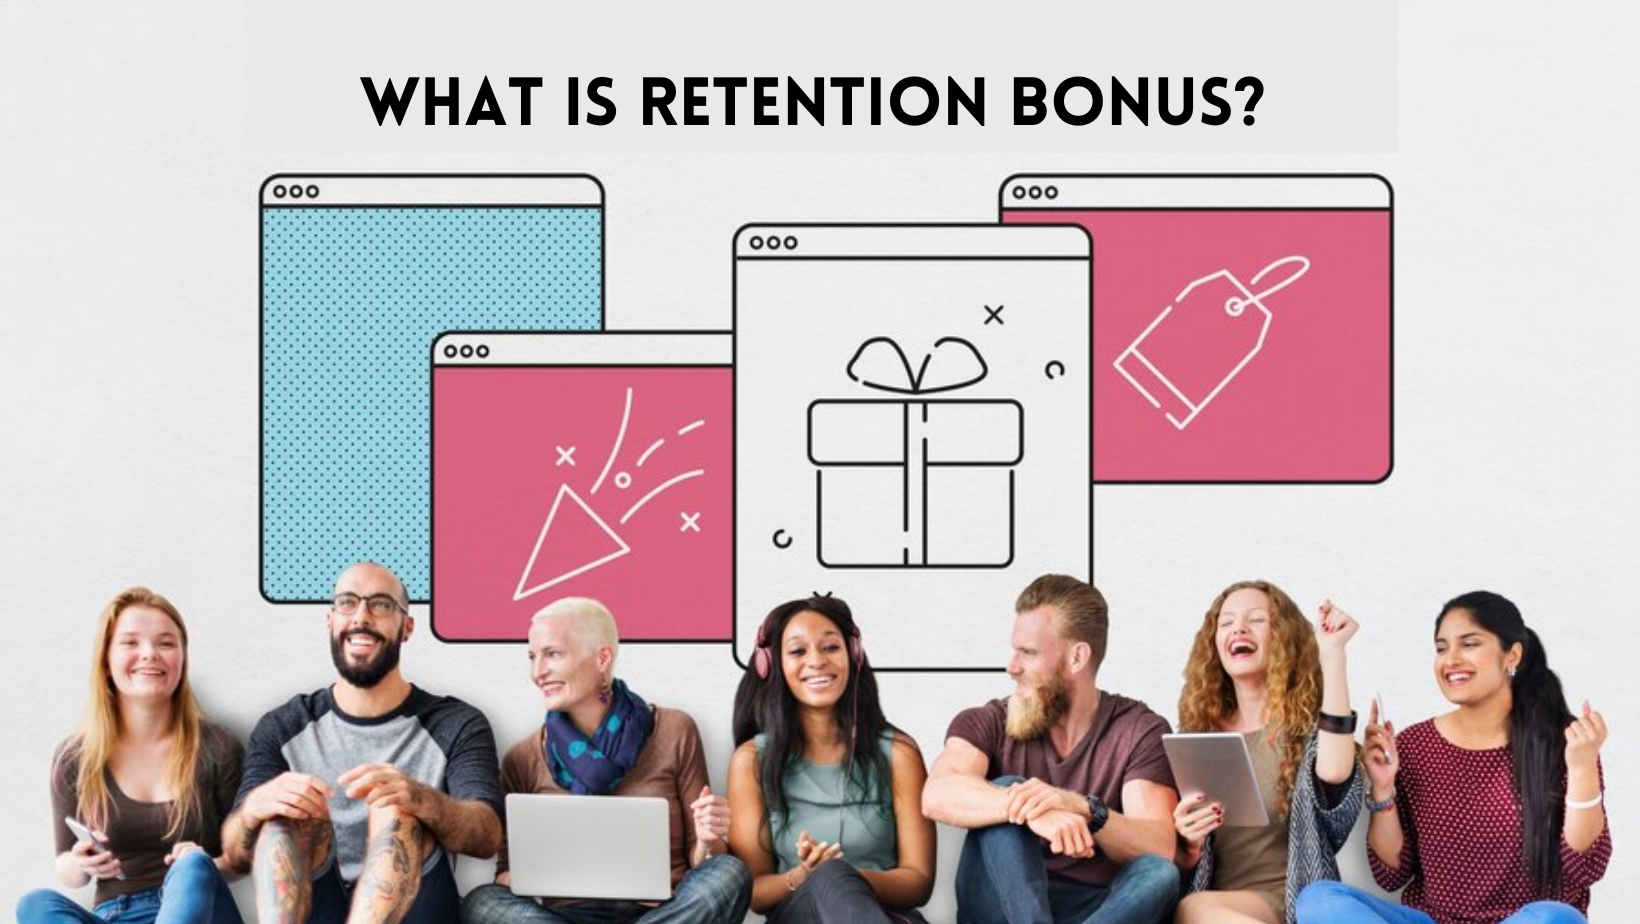 What is Retention bonus?